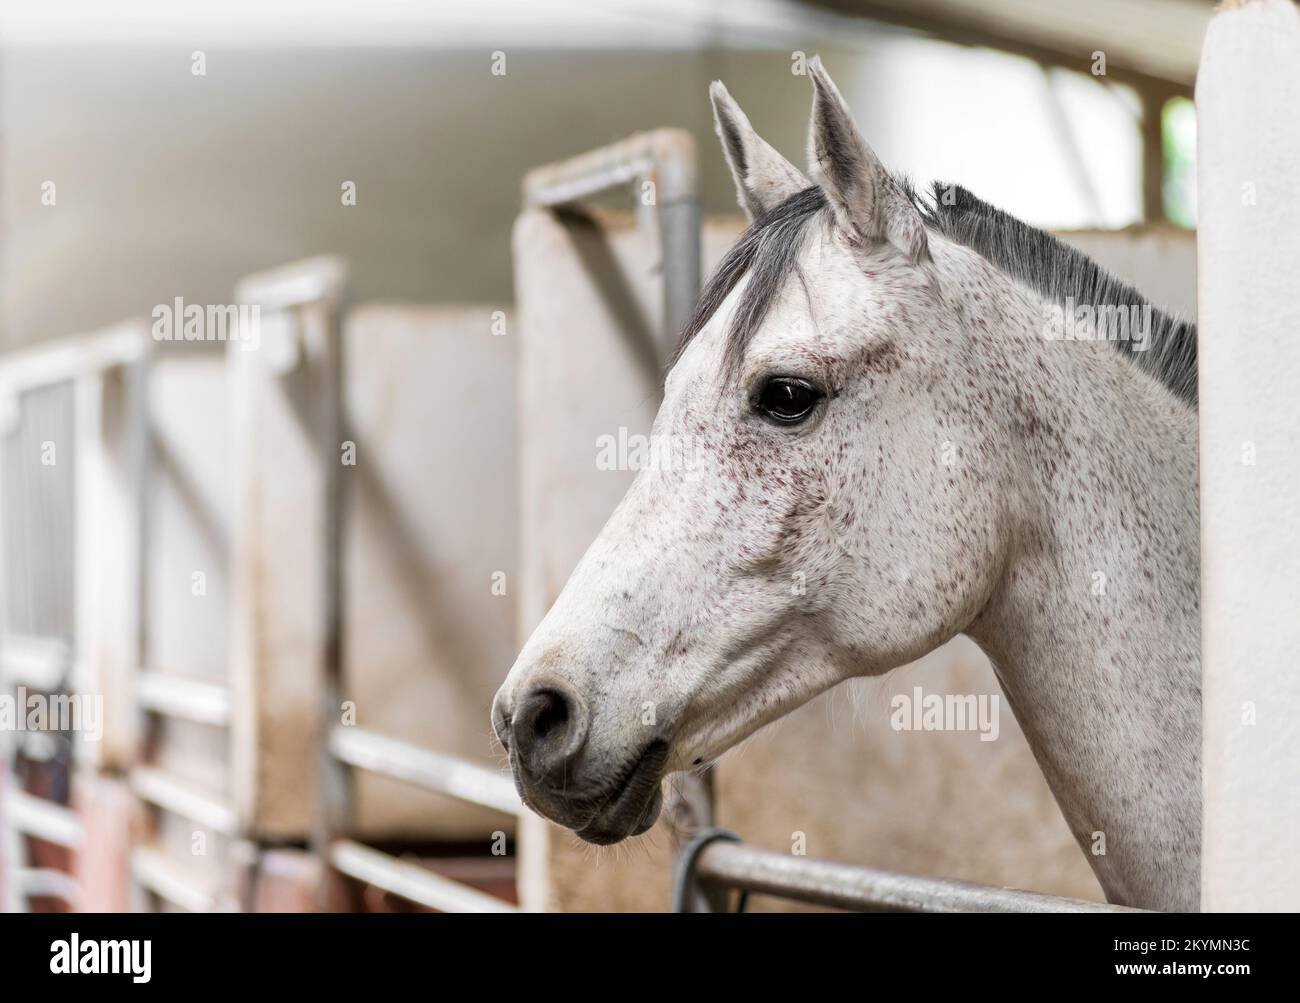 Vista lateral de la cabeza de adorable caballo obediente con abrigo blanco y melena gris de pie en establo con barras de metal en granero Foto de stock